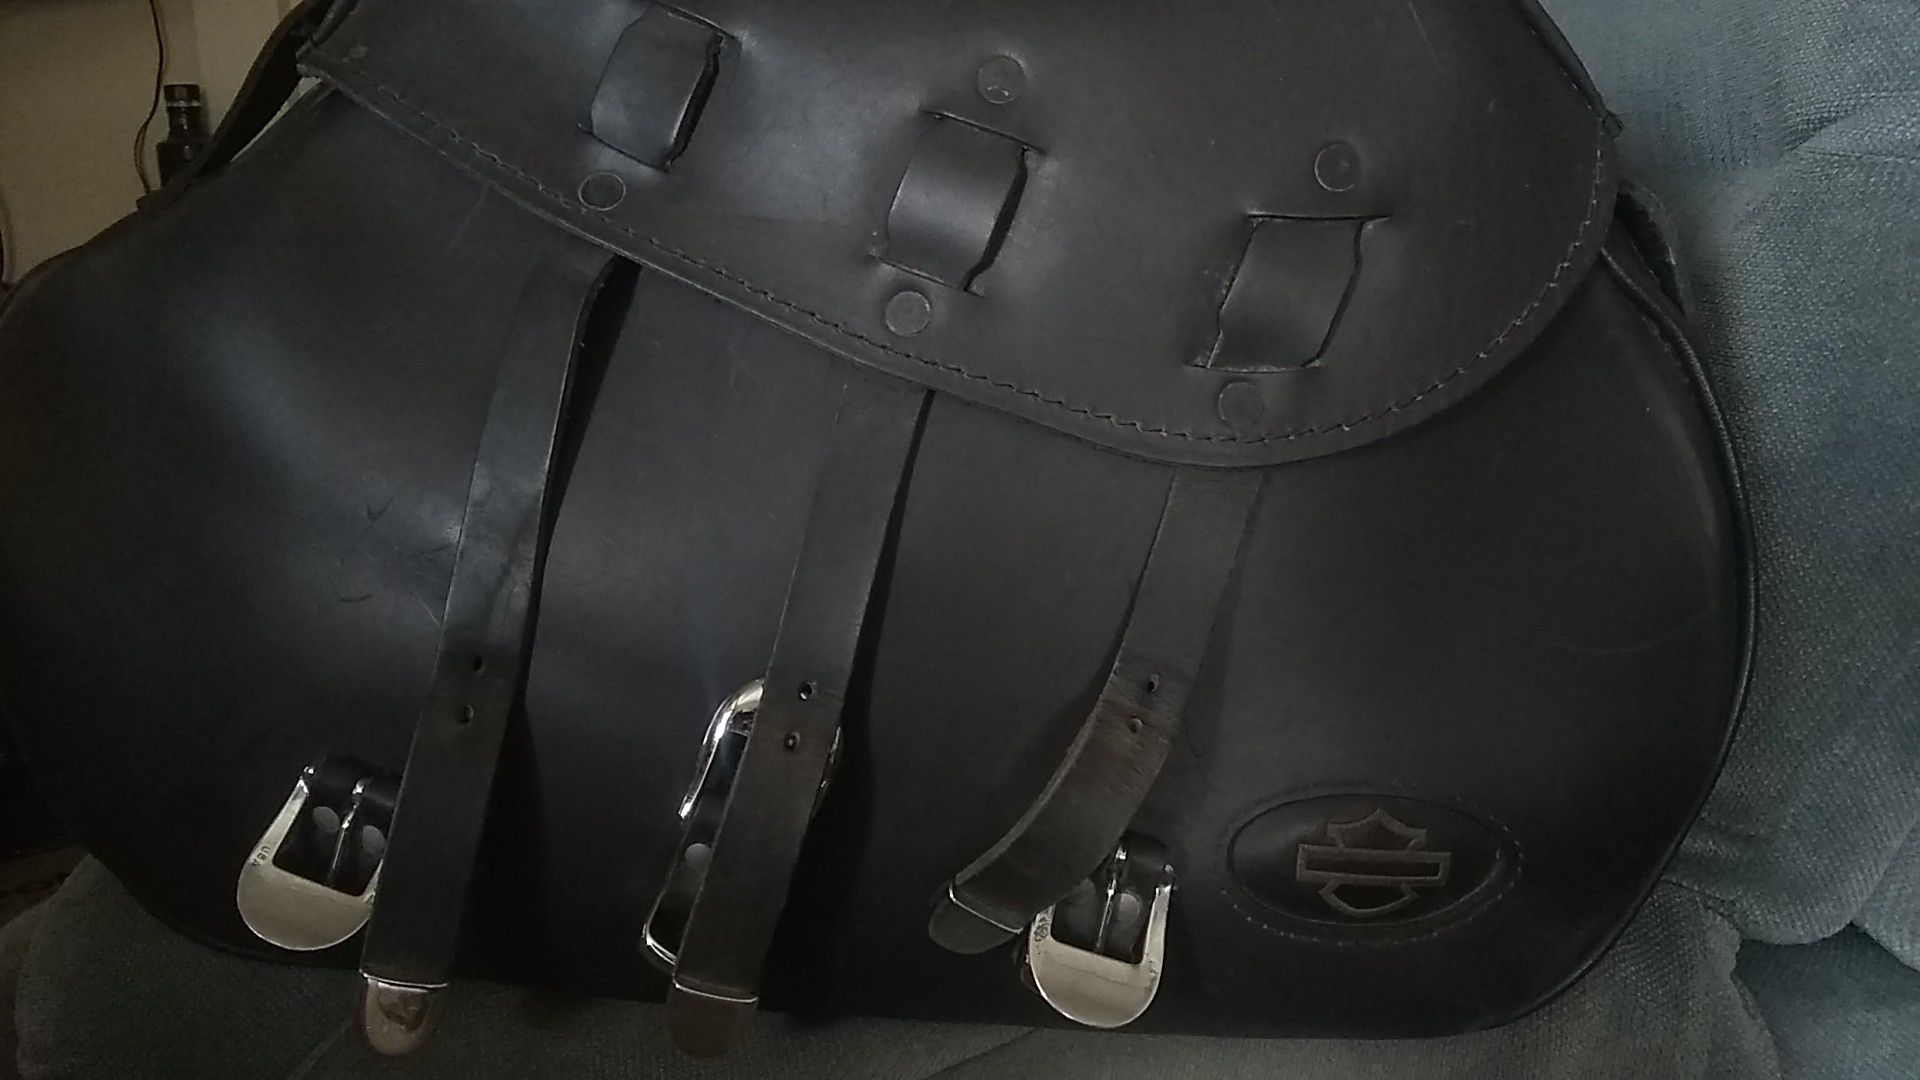 Harley-davidson saddlebags have brackets for a 2004 Sportster